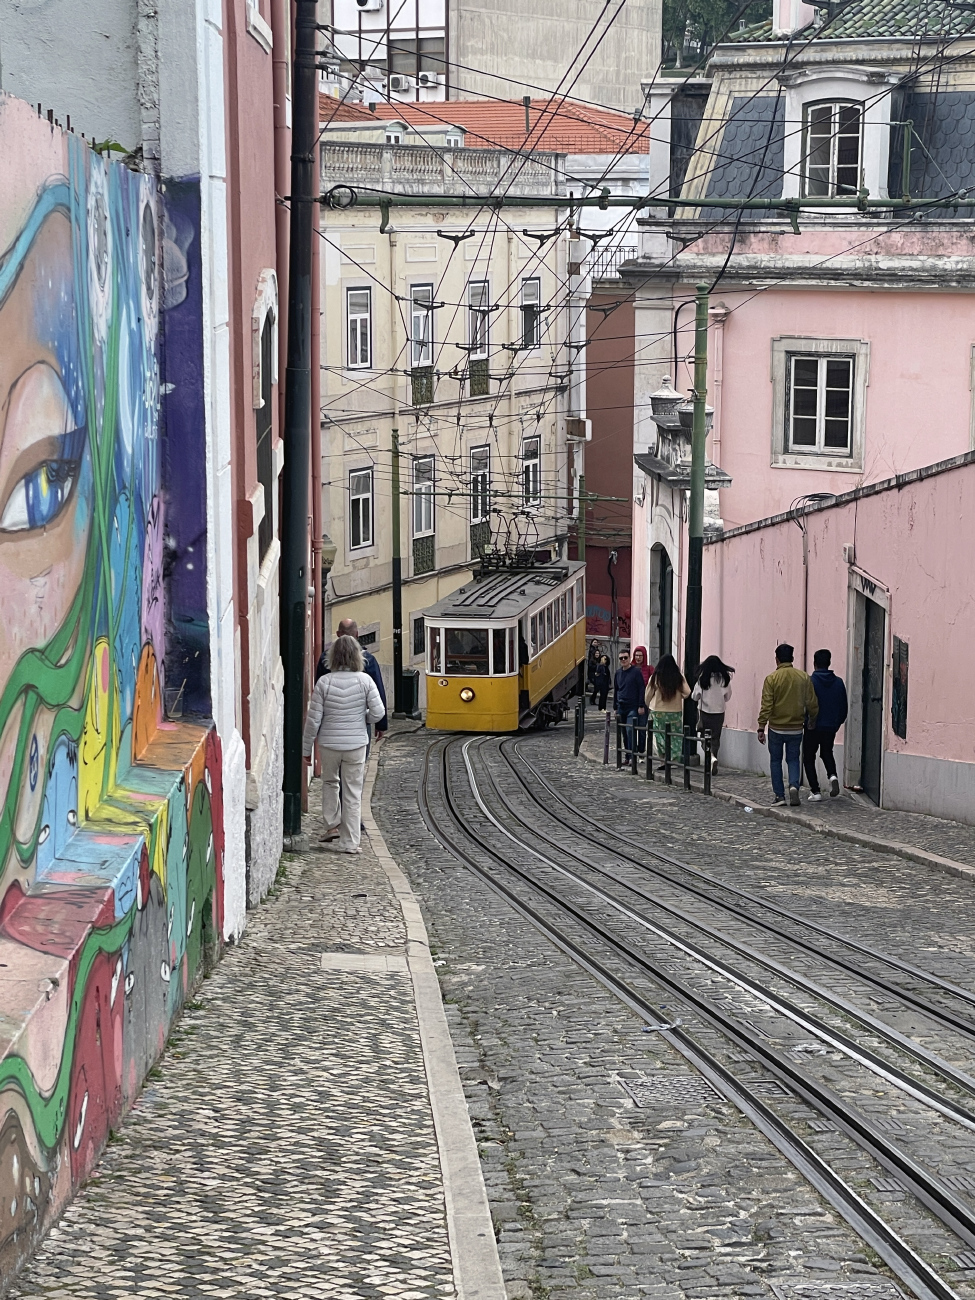 Lissabon — Ascensor da Glória